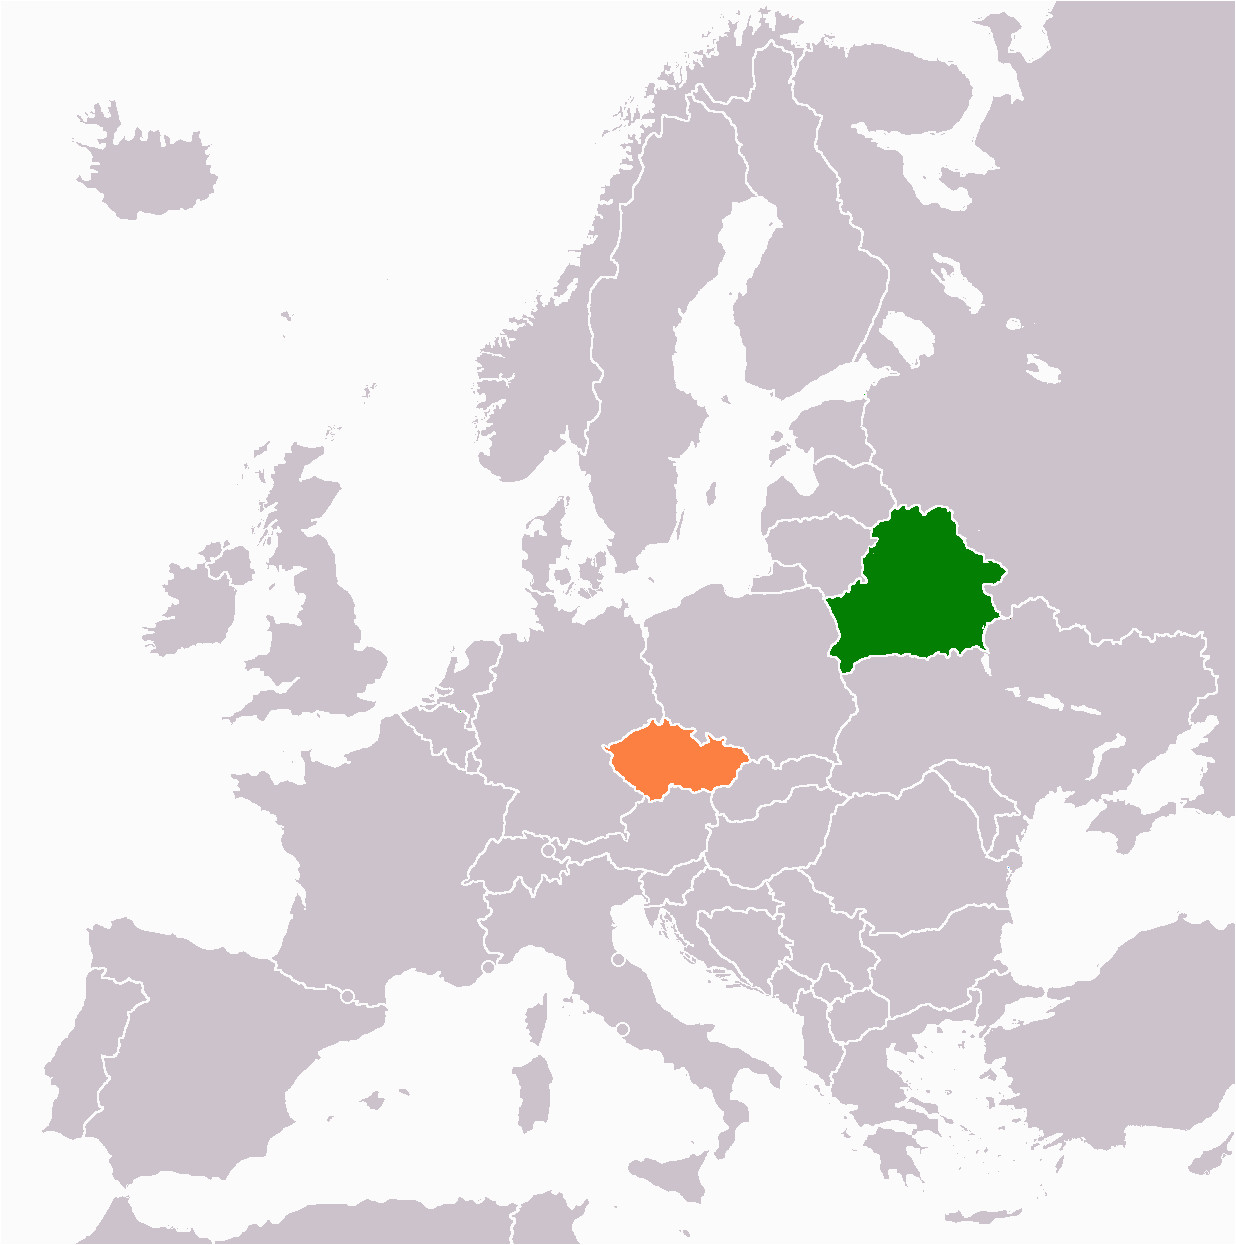 belarus czech republic relations wikipedia